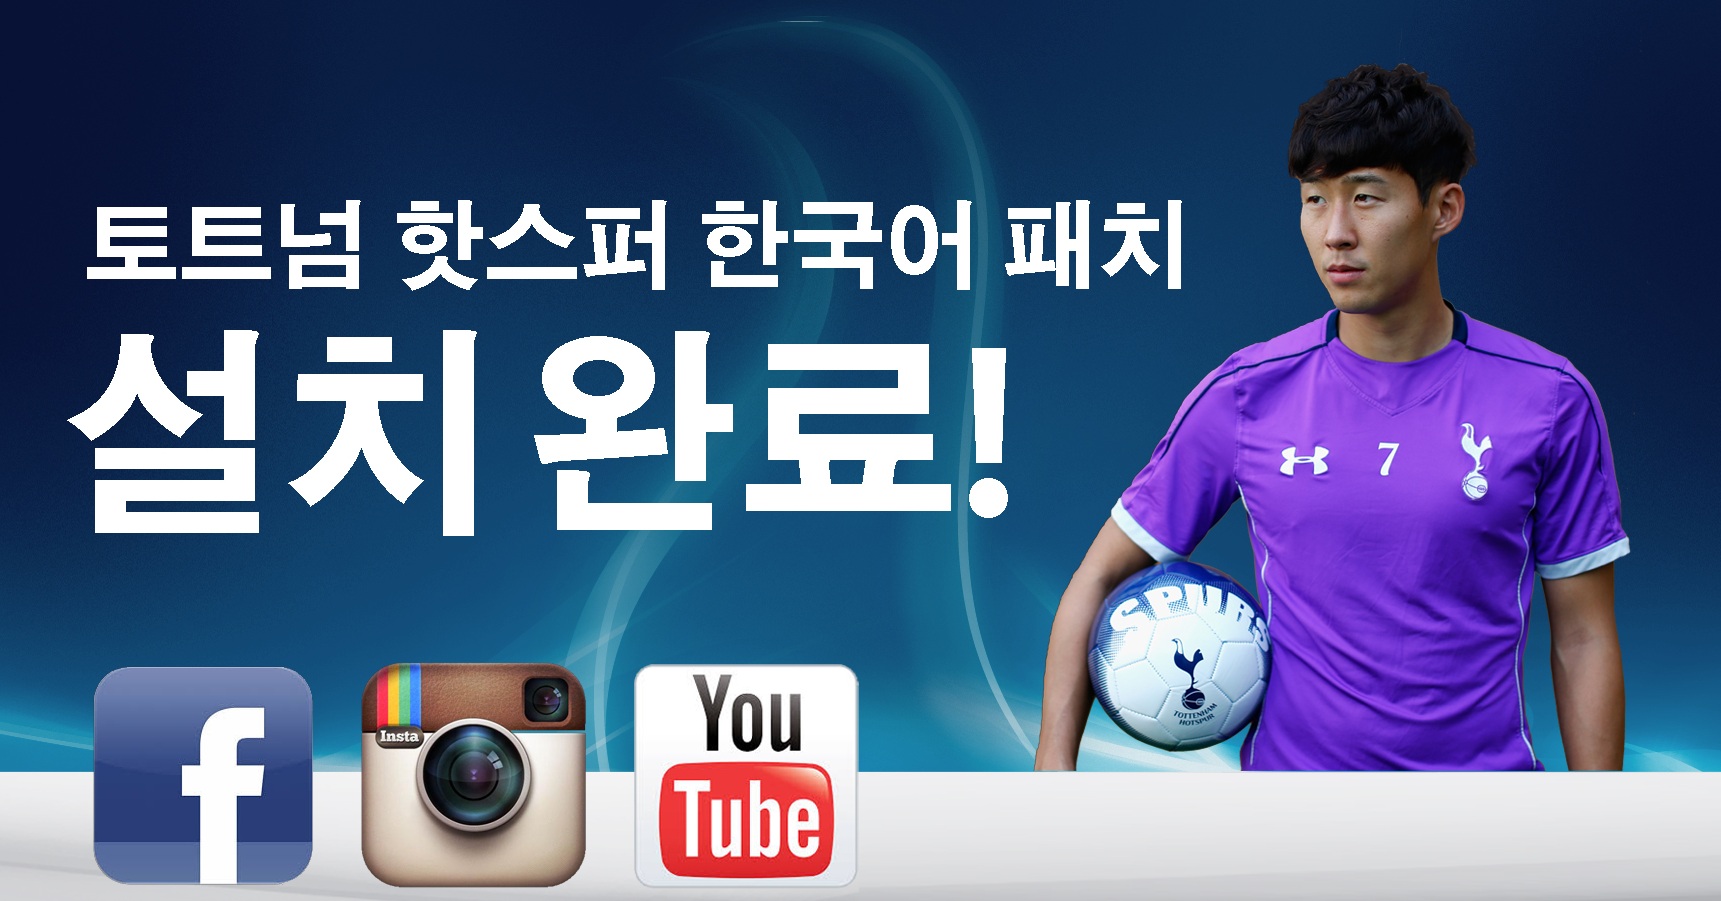 Tottenham Hotspur Launch Digital Presence in Korea